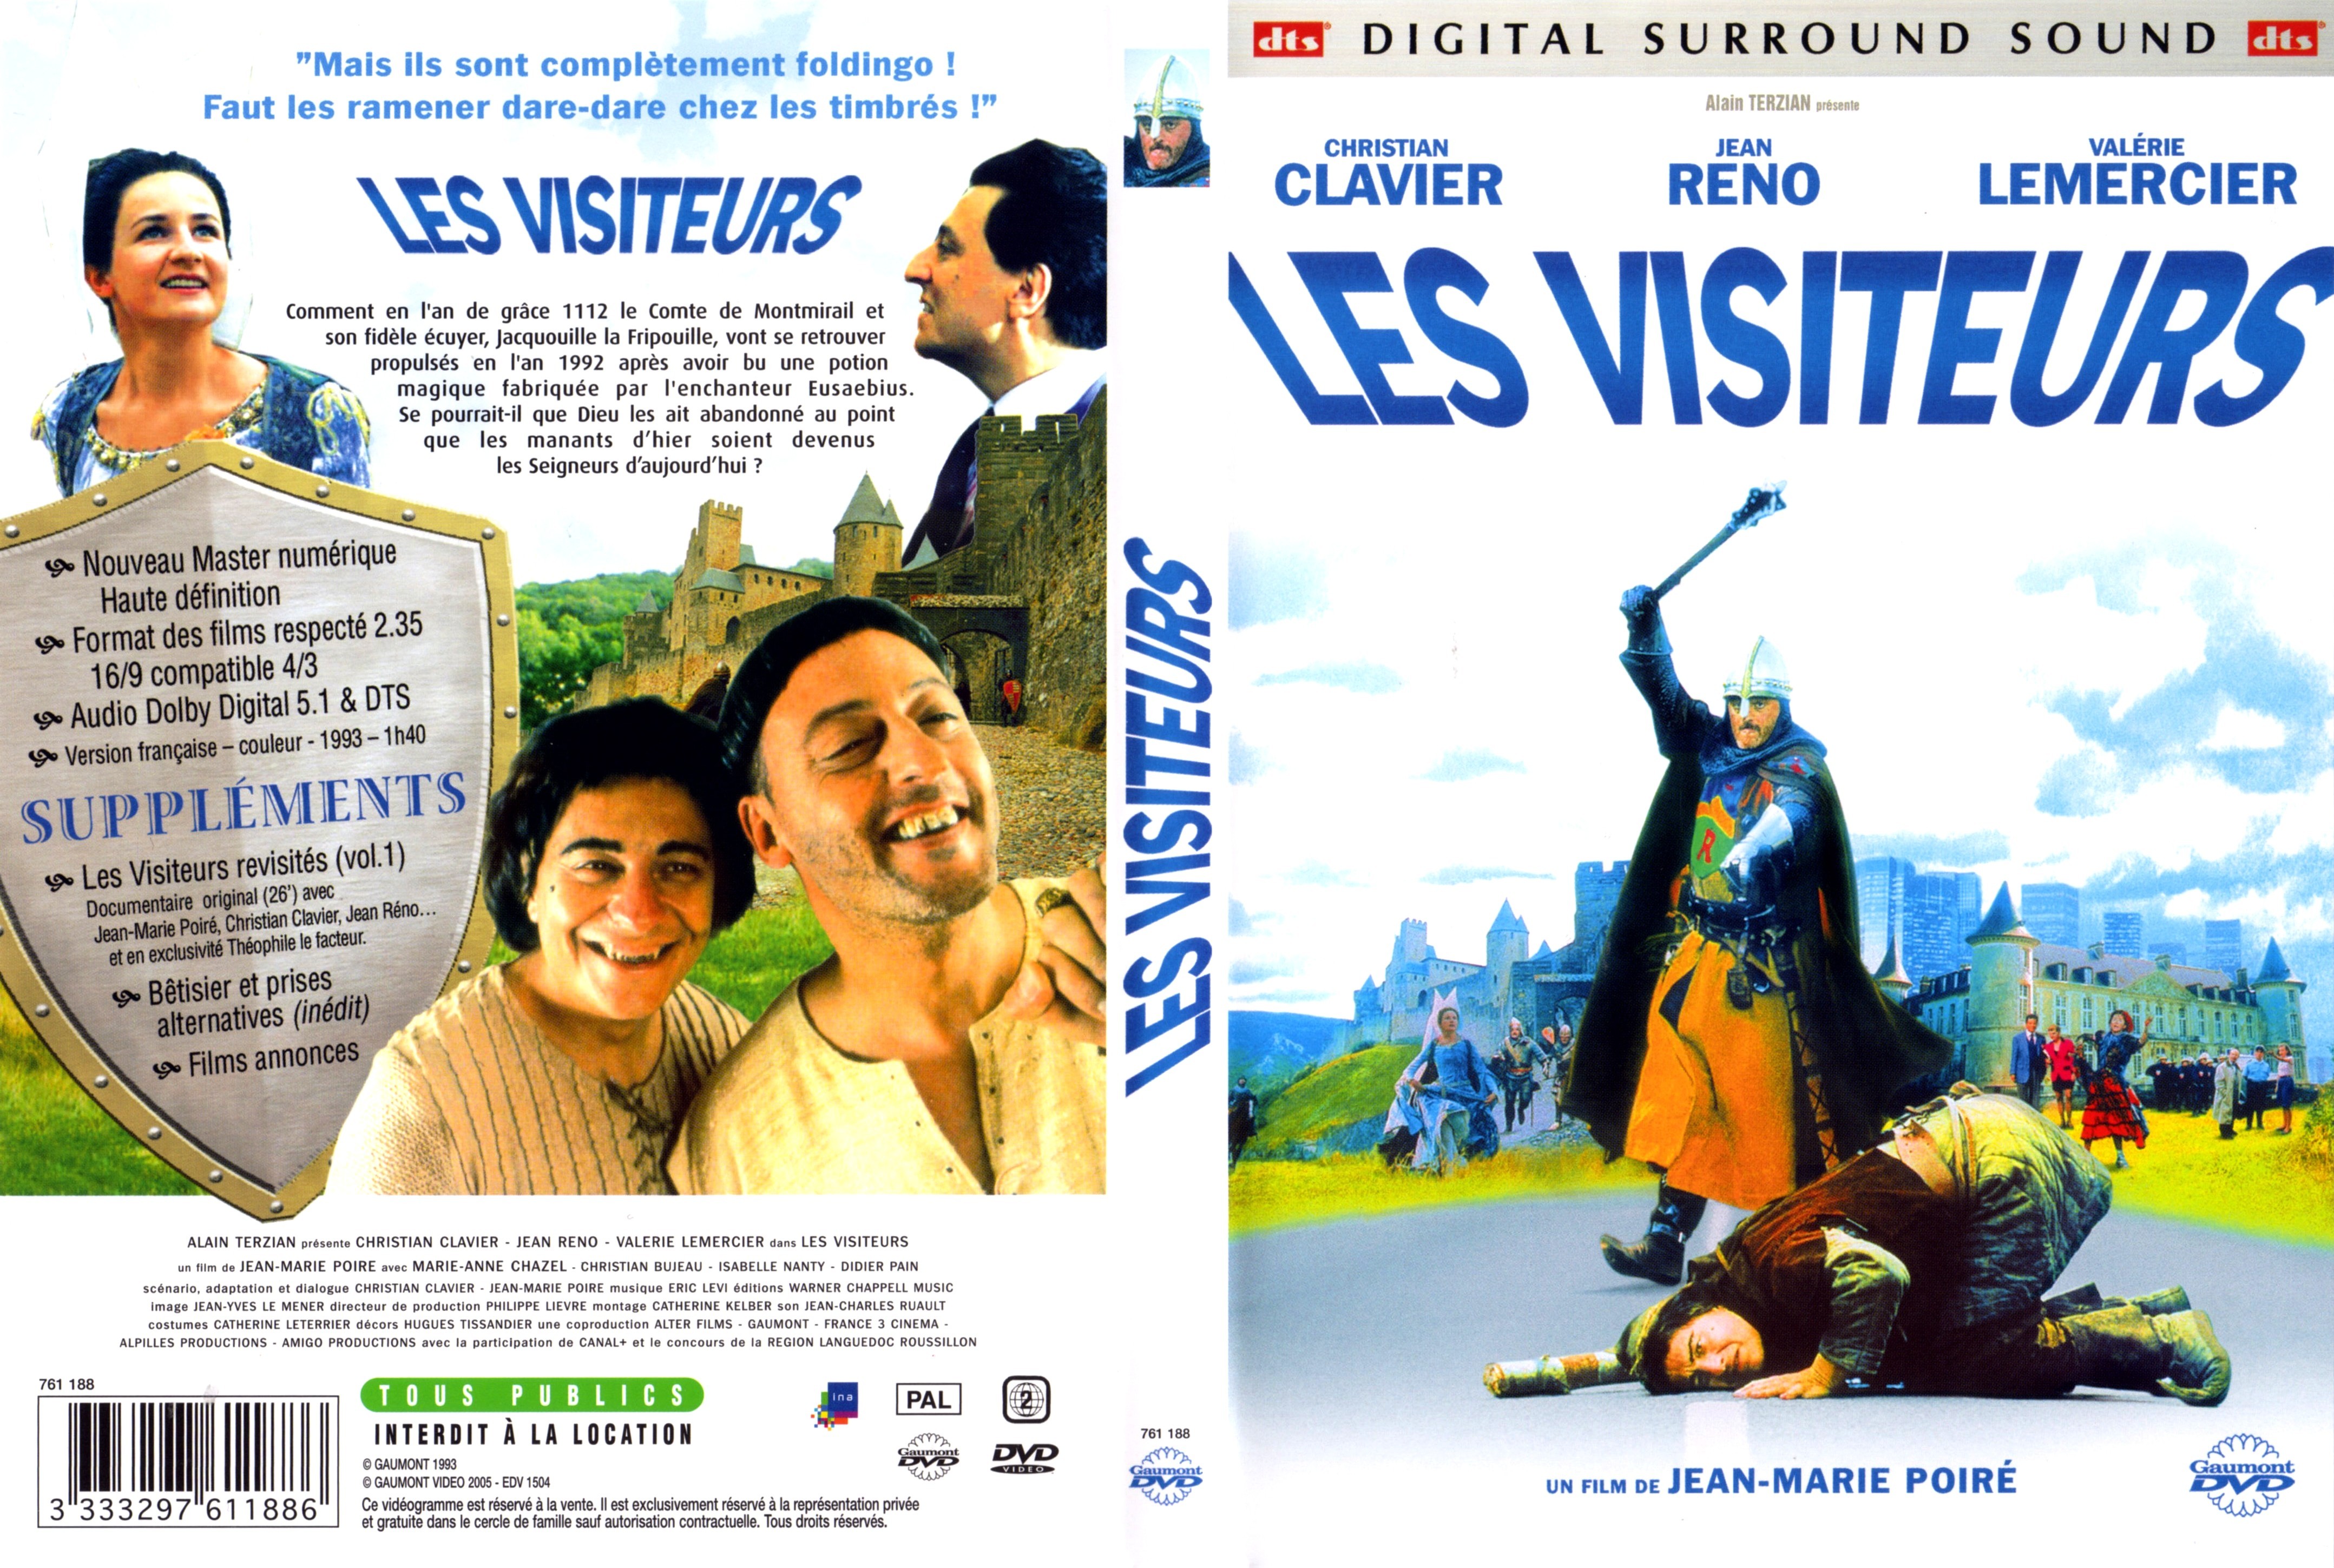 Jaquette DVD Les visiteurs v3